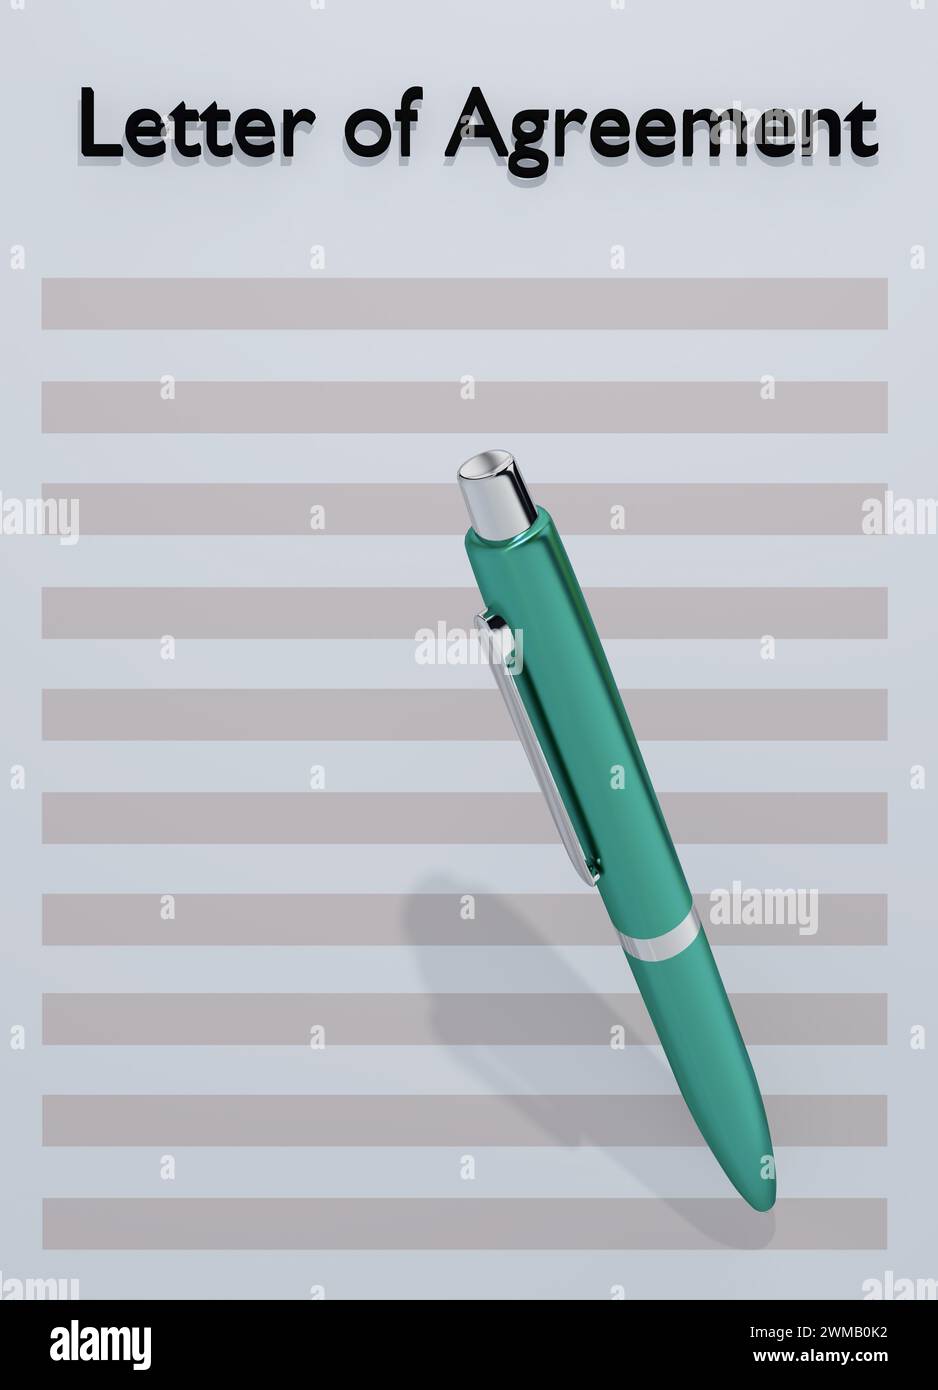 3D-Abbildung eines Stifts über einem blassblauen Blatt Papier mit der Überschrift Letter of Agreement Stockfoto